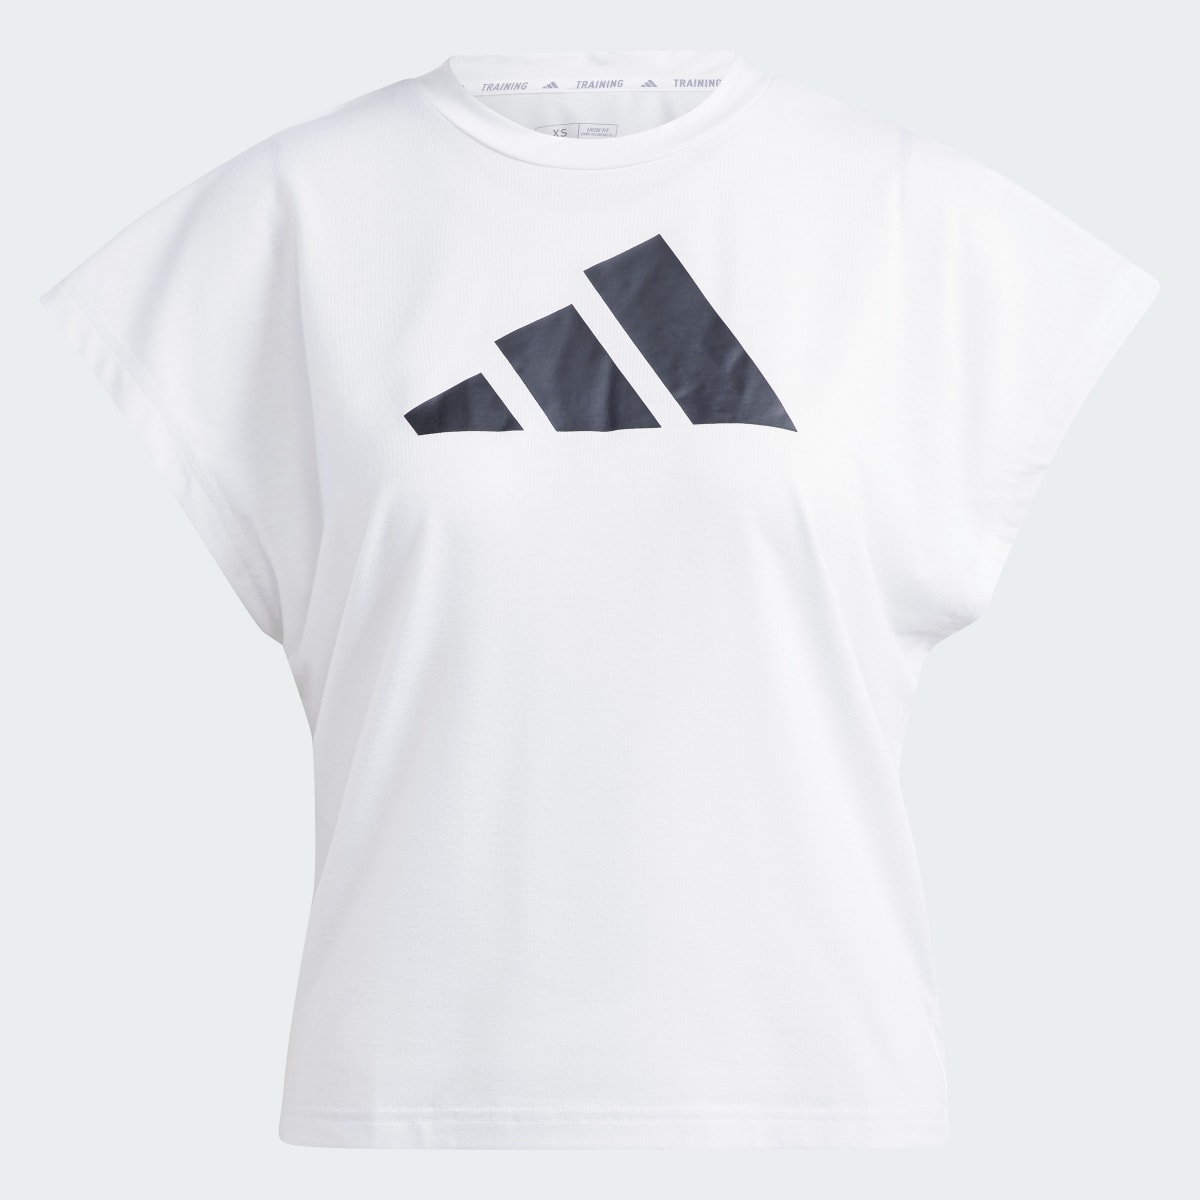 Adidas Train Icons Training Regular Fit Logo Tişört. 5